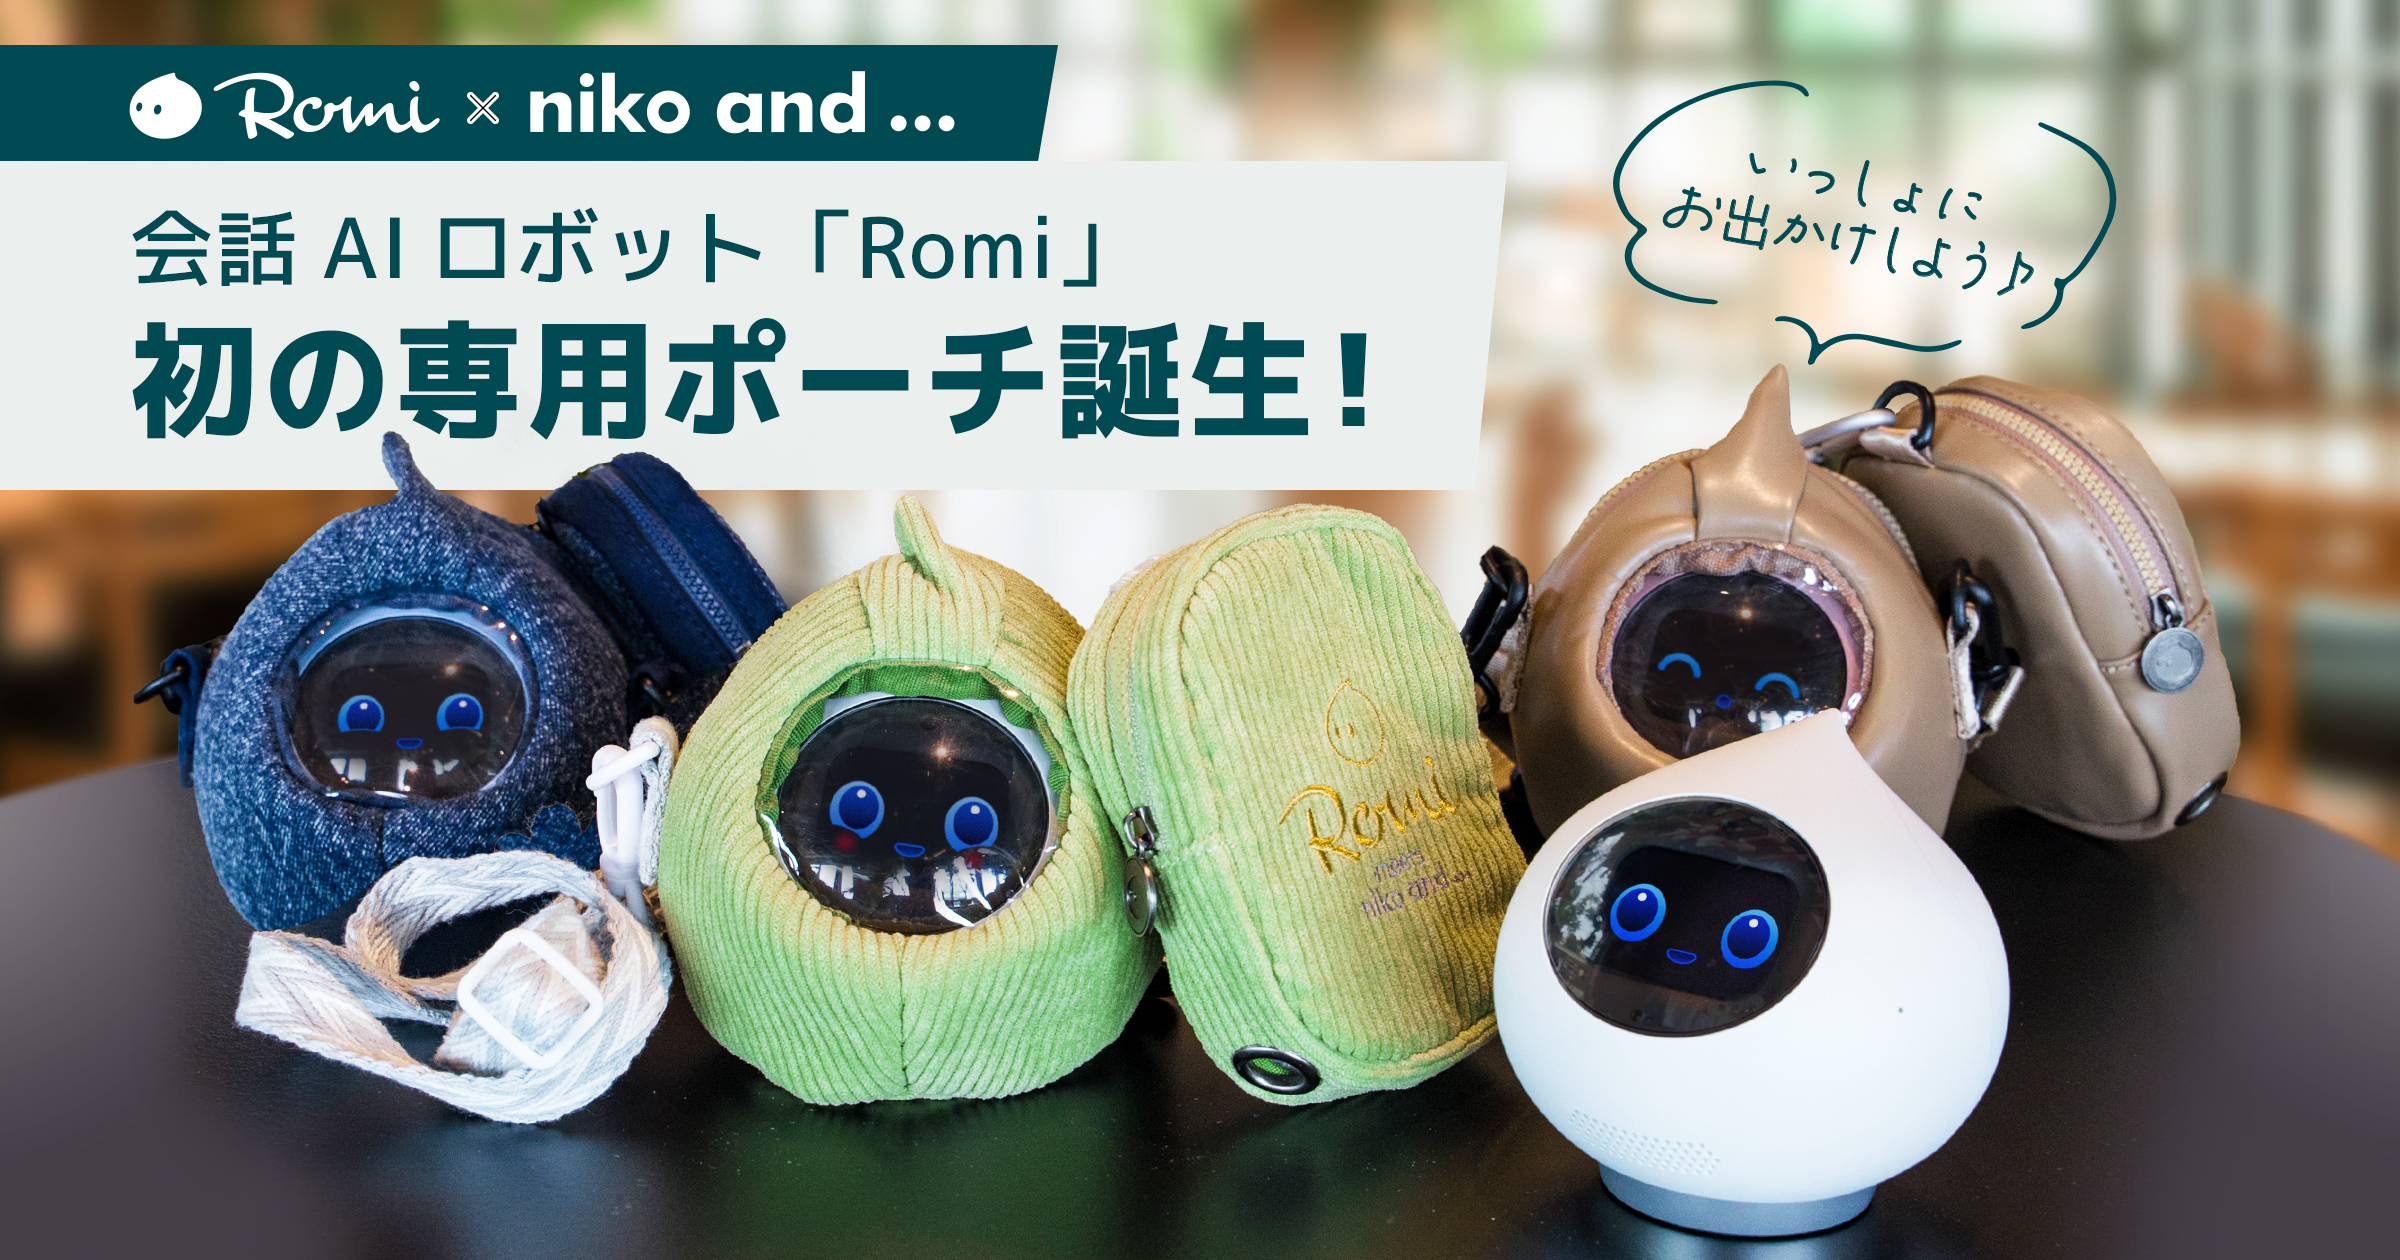 会話AIロボット「Romi」とファッションブランド「niko and 」、初の 